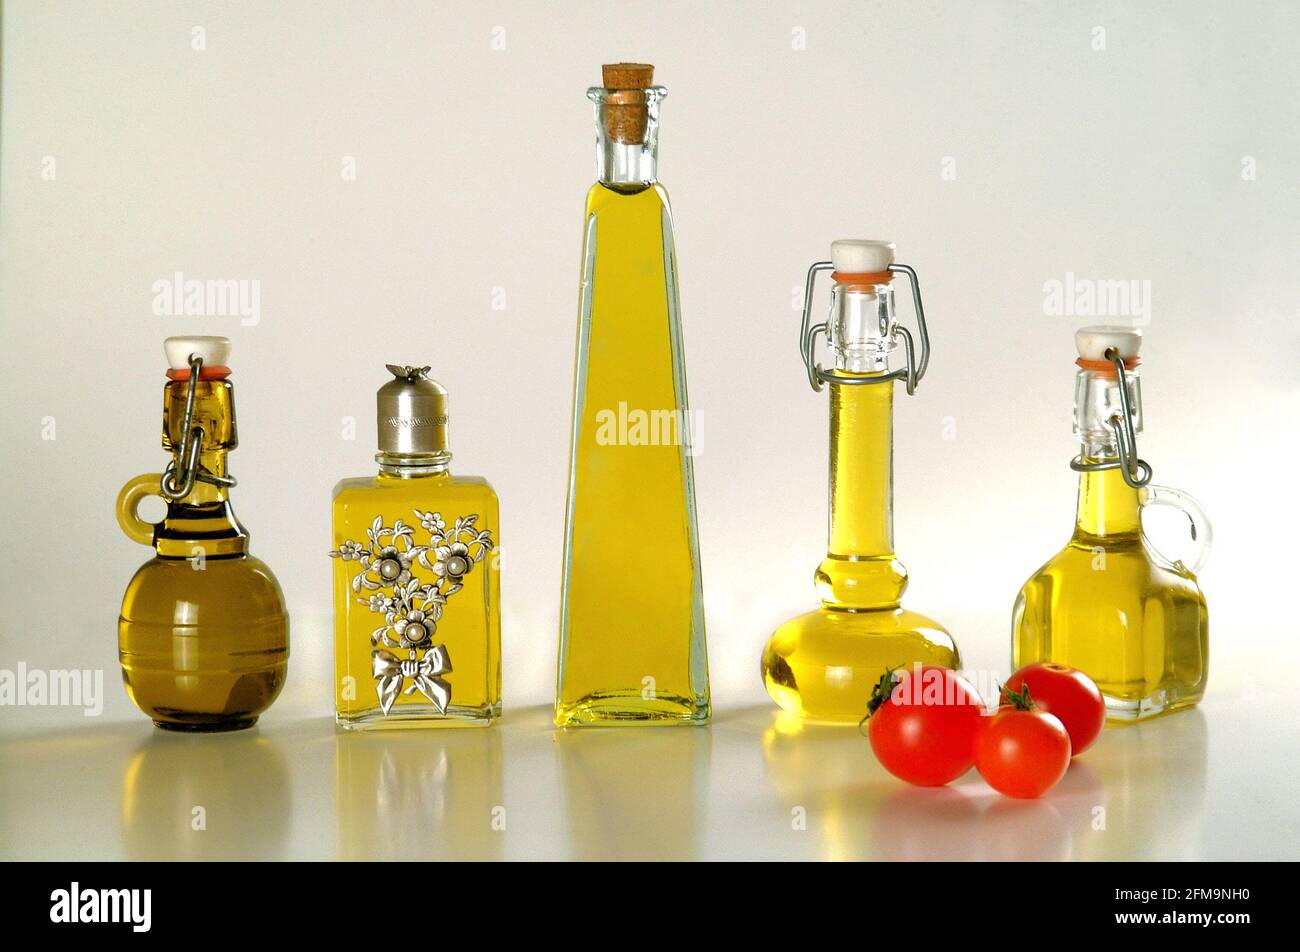 Cinq petites bouteilles d'huile d'olive extra vierge italienne arrière-plan clair Banque D'Images